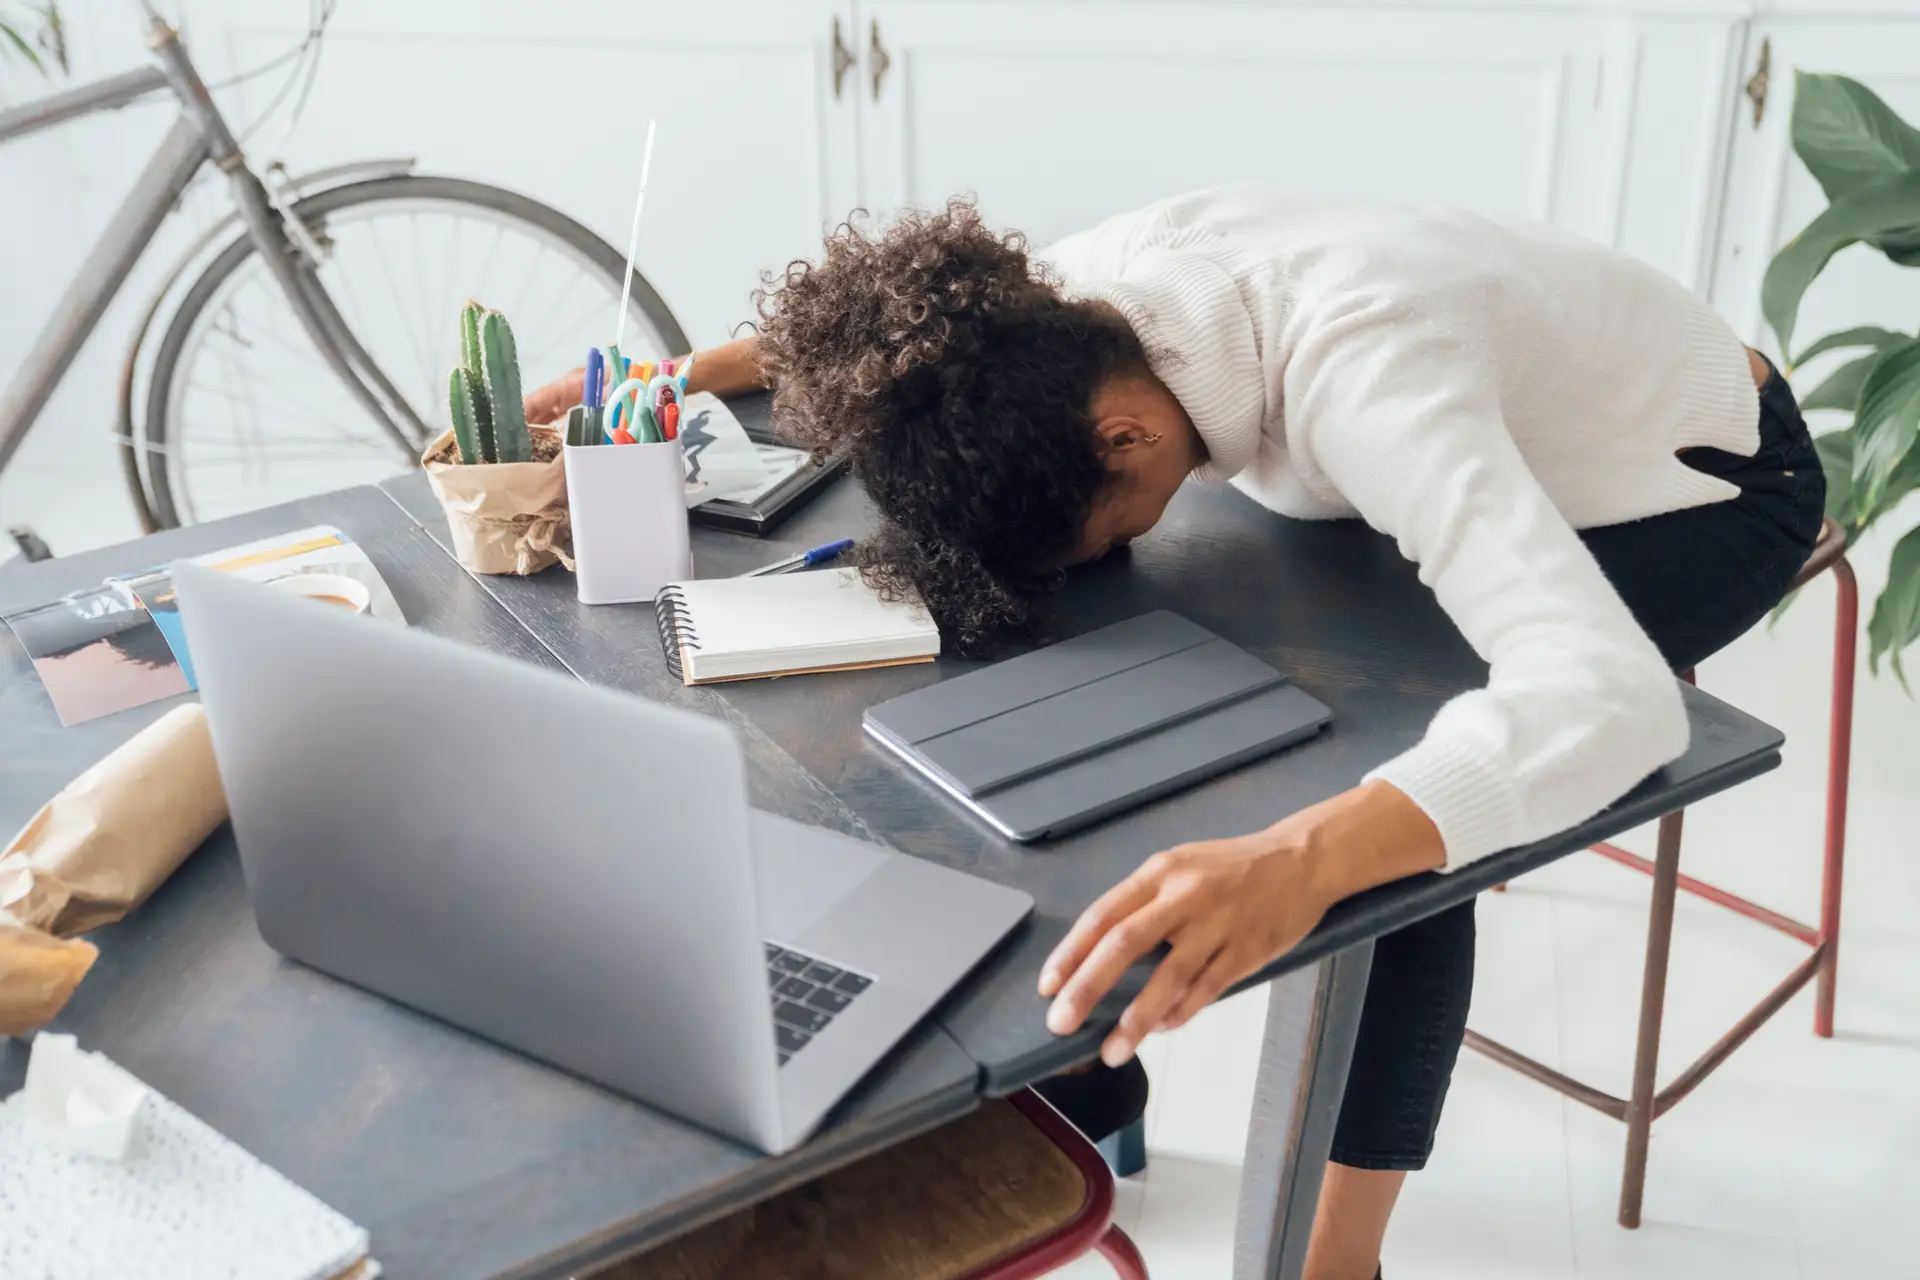 Cerca de 80% dos trabalhadores tem pelo menos um sintoma de burnout